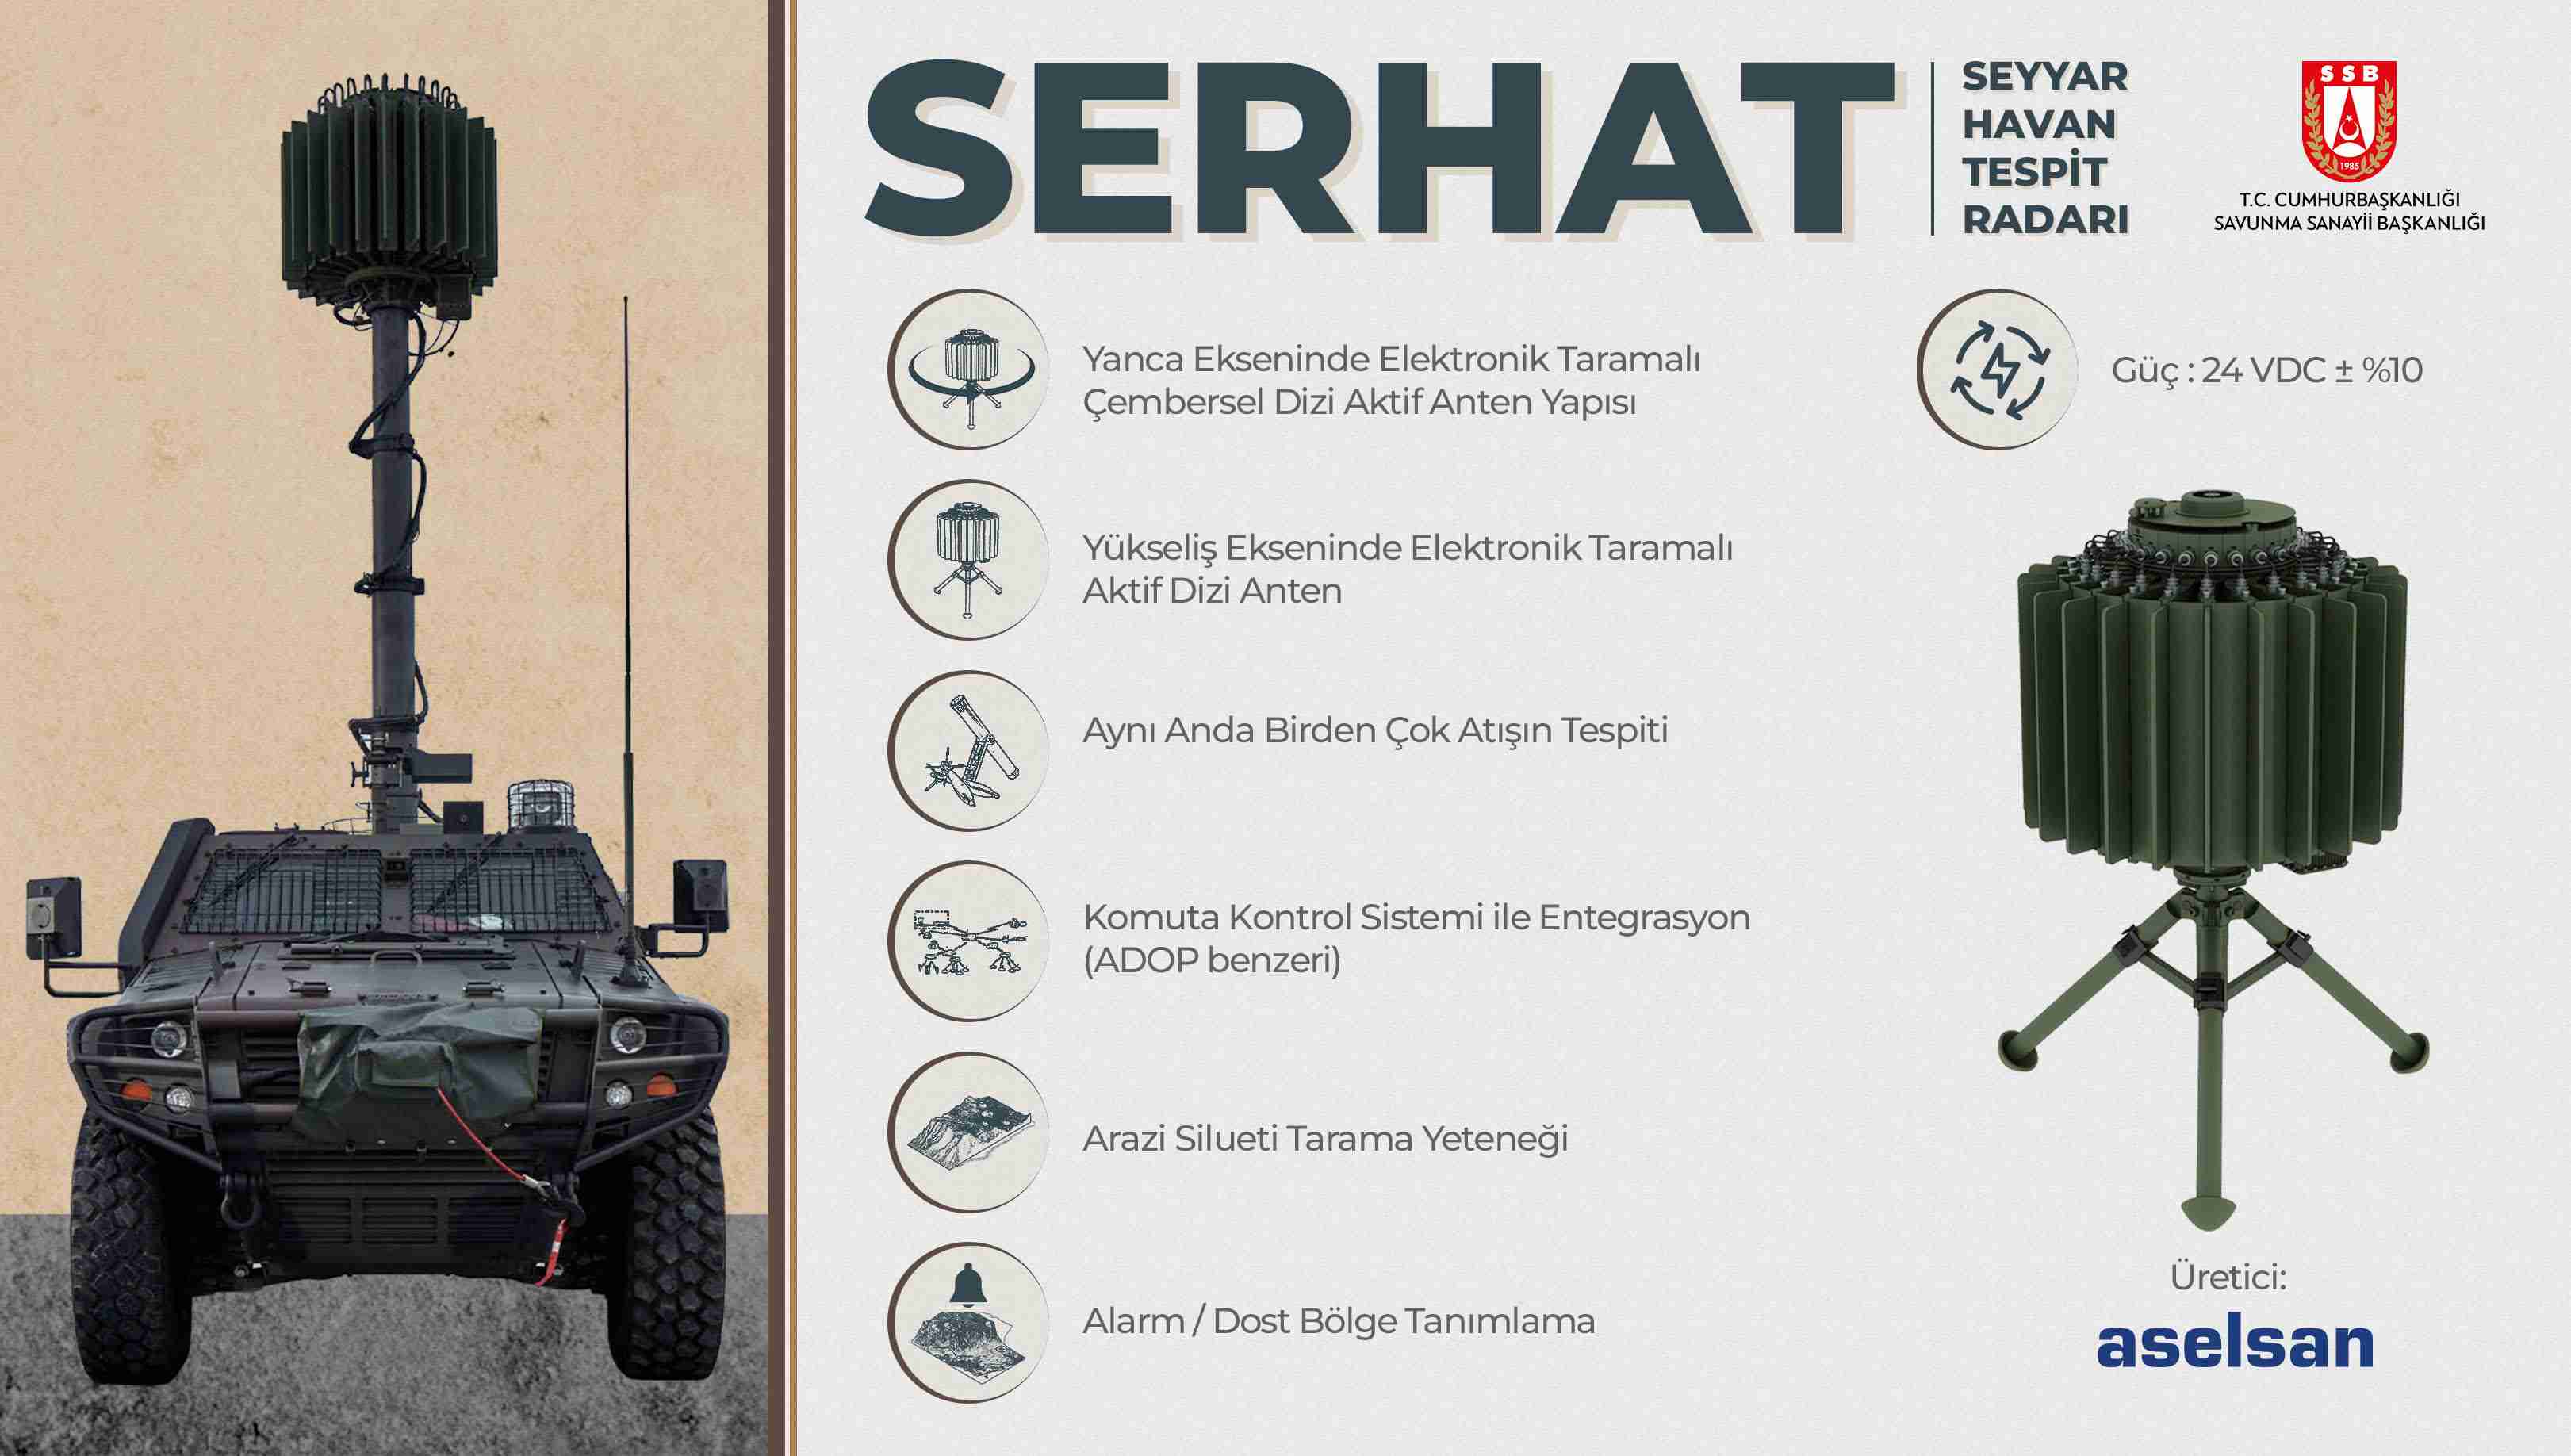 Türk güvenlik güçlerine Seyyar Havan Tespit Radarı teslimatı